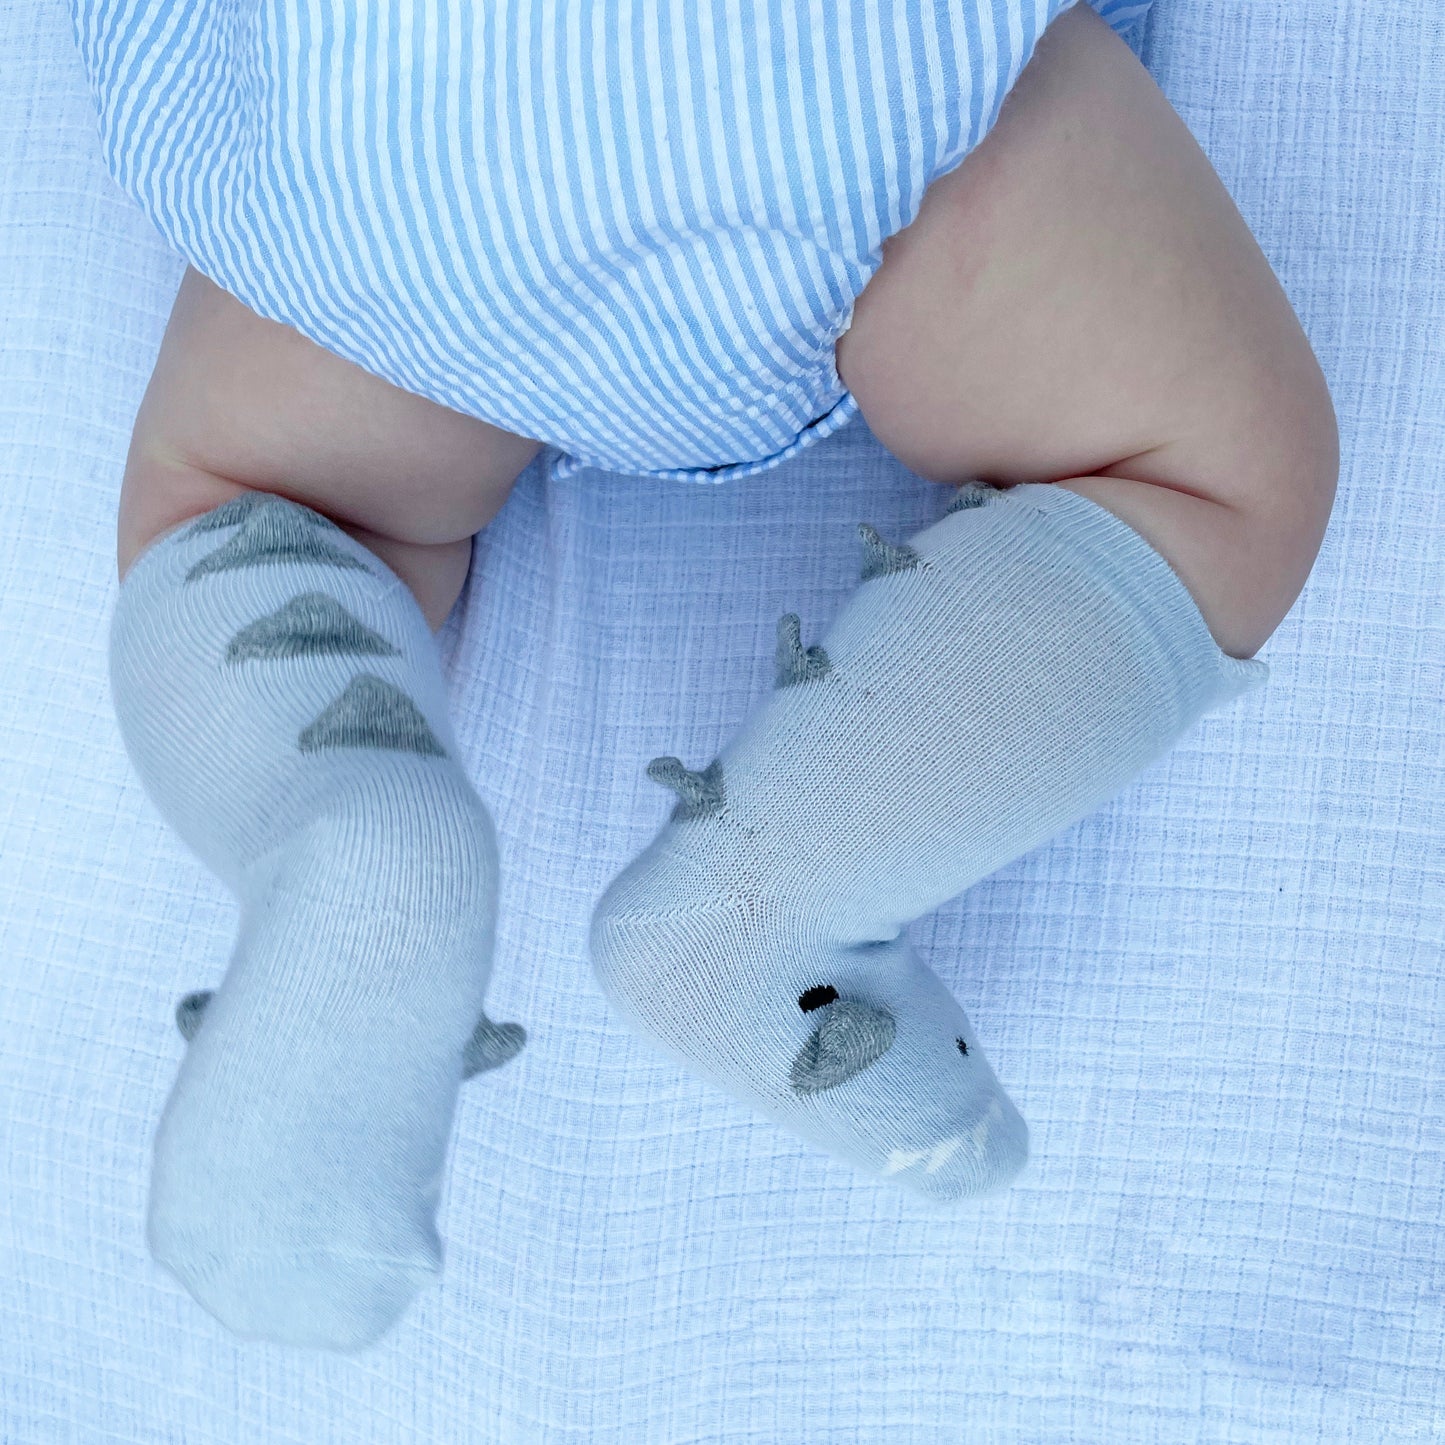 Baby Socks, 3D Dinosaur Newborn Sock, Socks For Baby Boy, Baby Shower Gift, New Baby Gift, Baby Announcement Gift, Animal Pattern Slippers